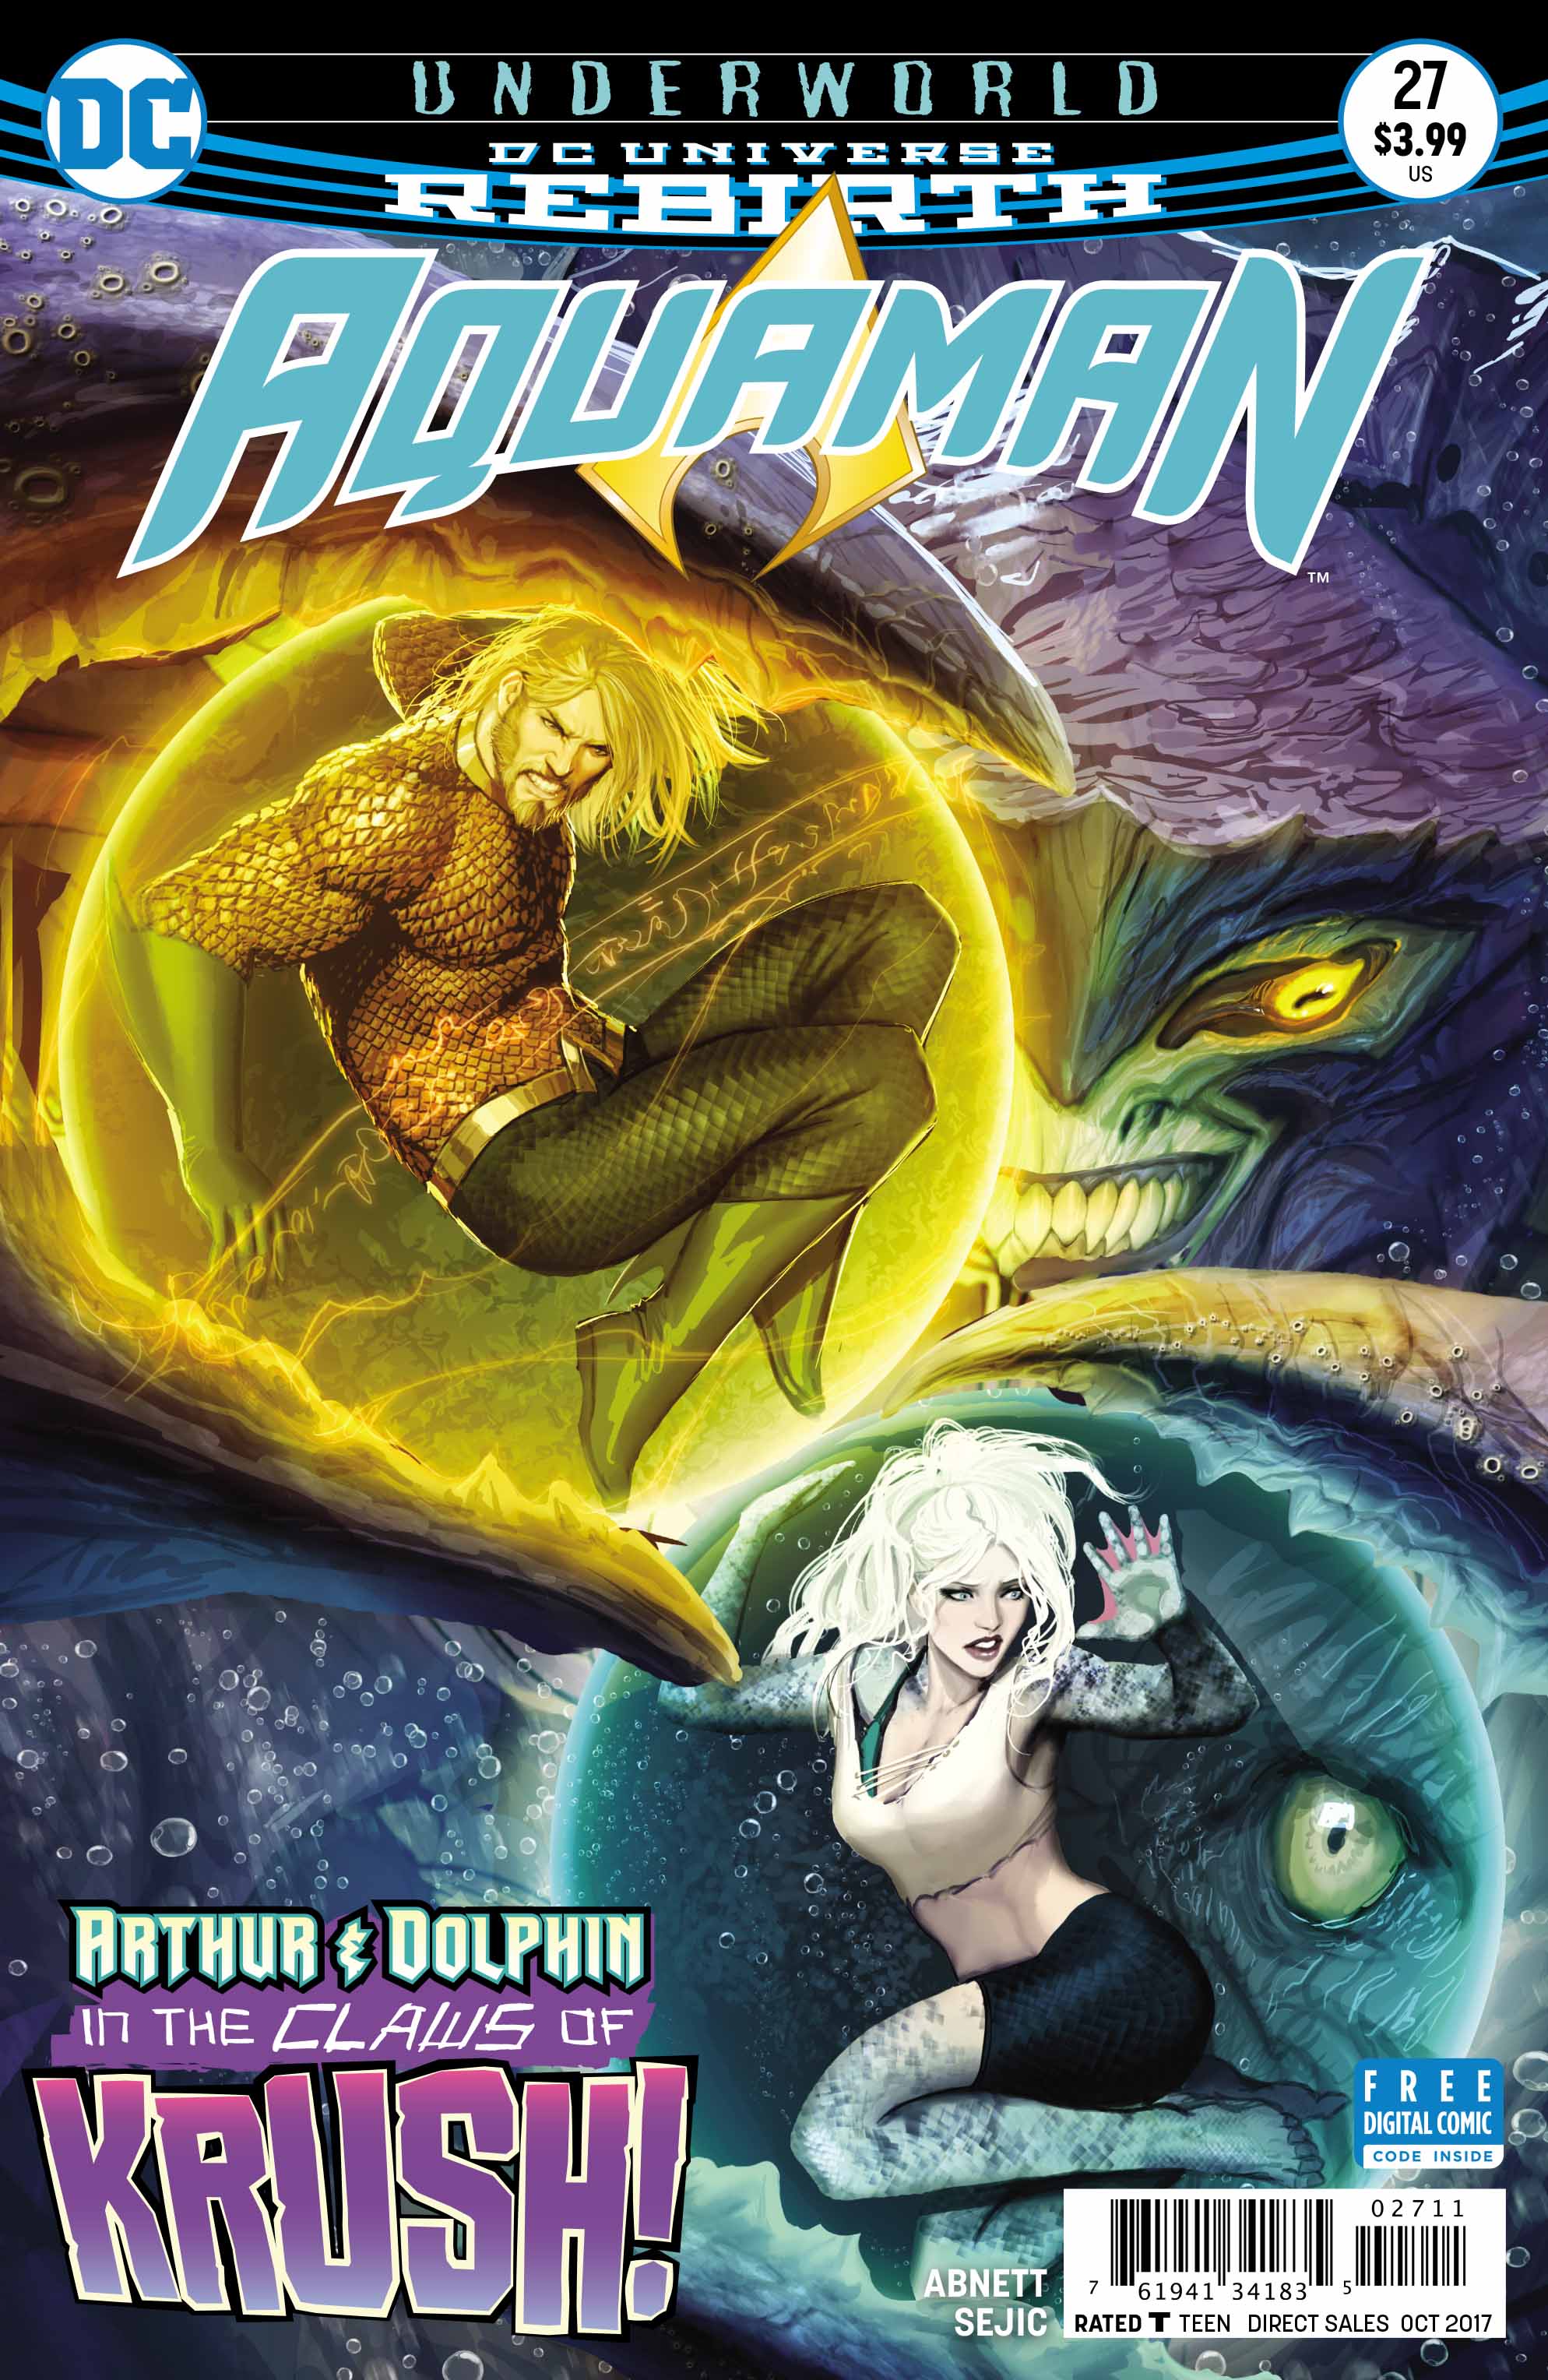 Aquaman Cover - DC Comics News